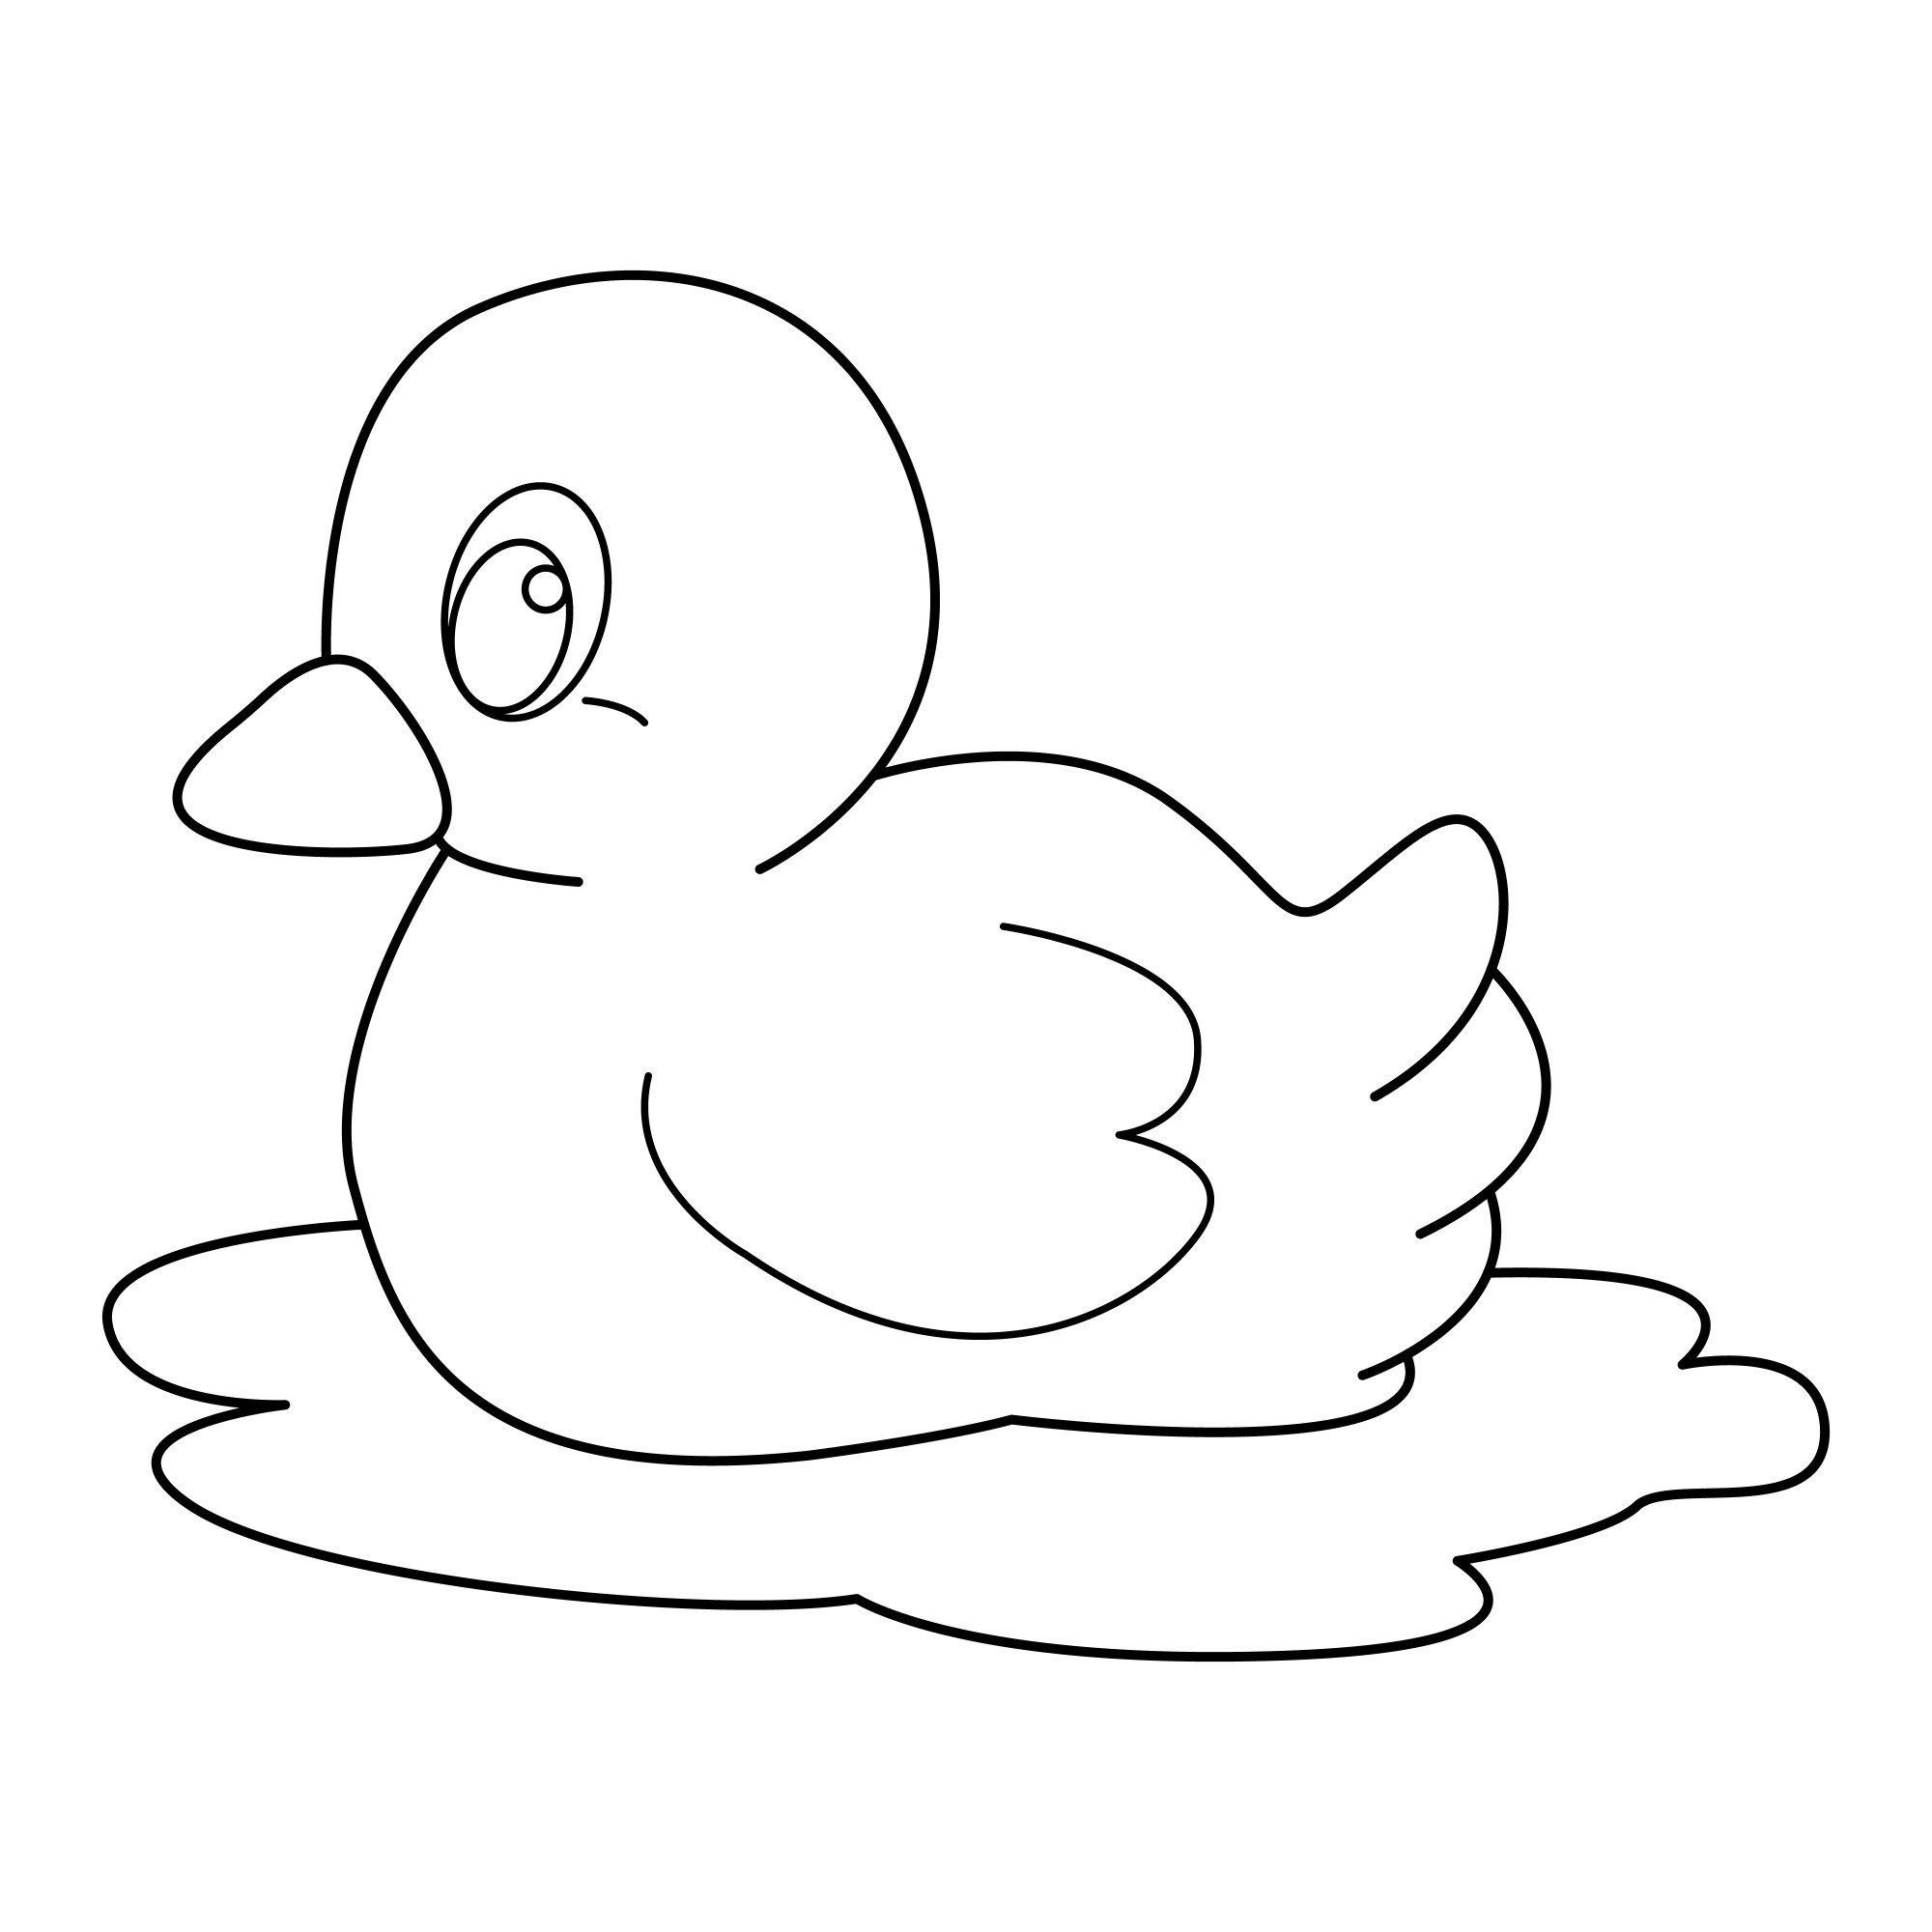 Раскраска для детей: контур утки